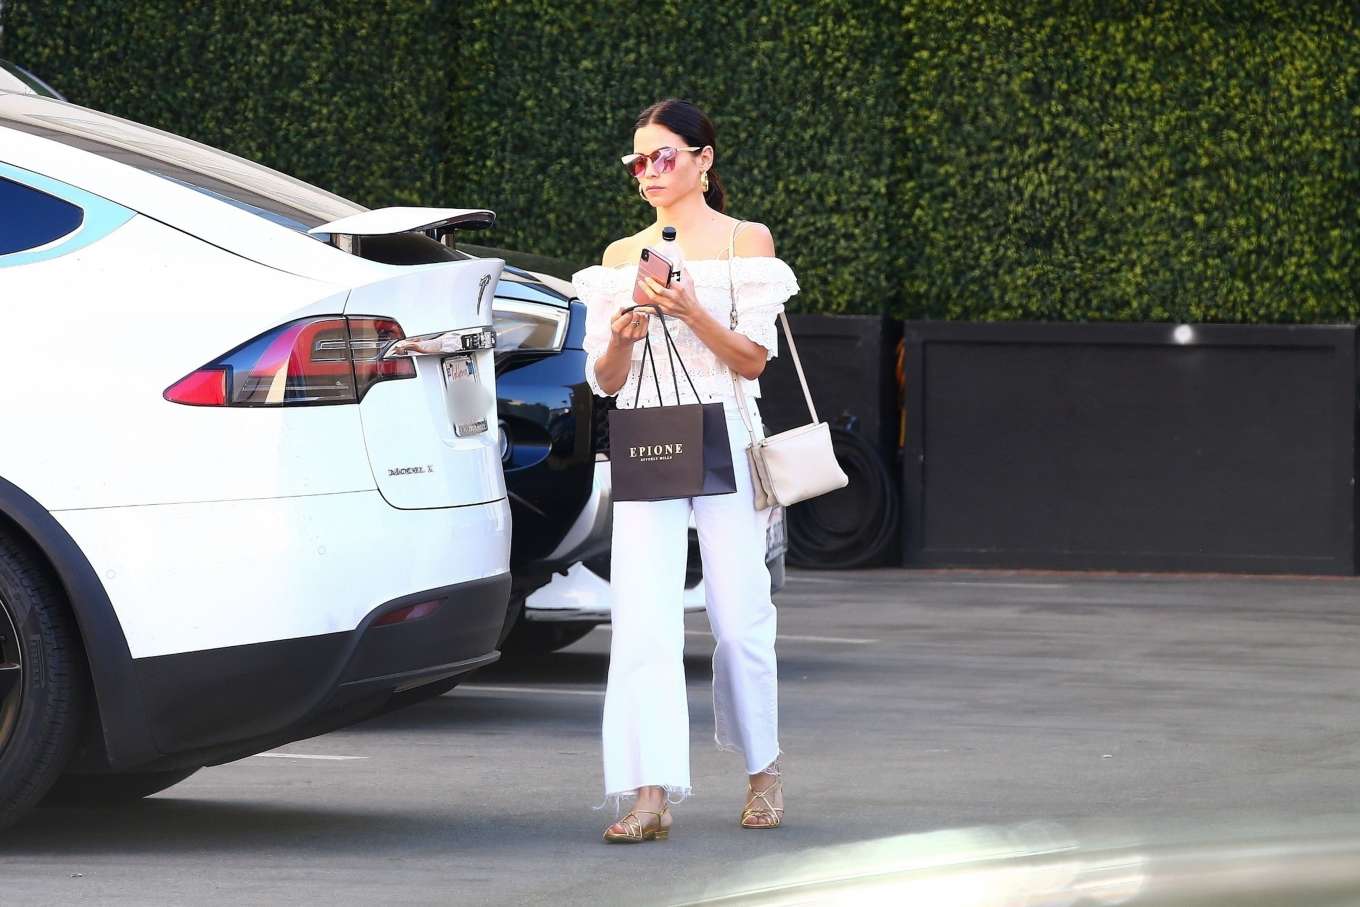 Jenna Dewan â€“ Leaving Epione Cosmetic Dermatologist in Beverly Hills